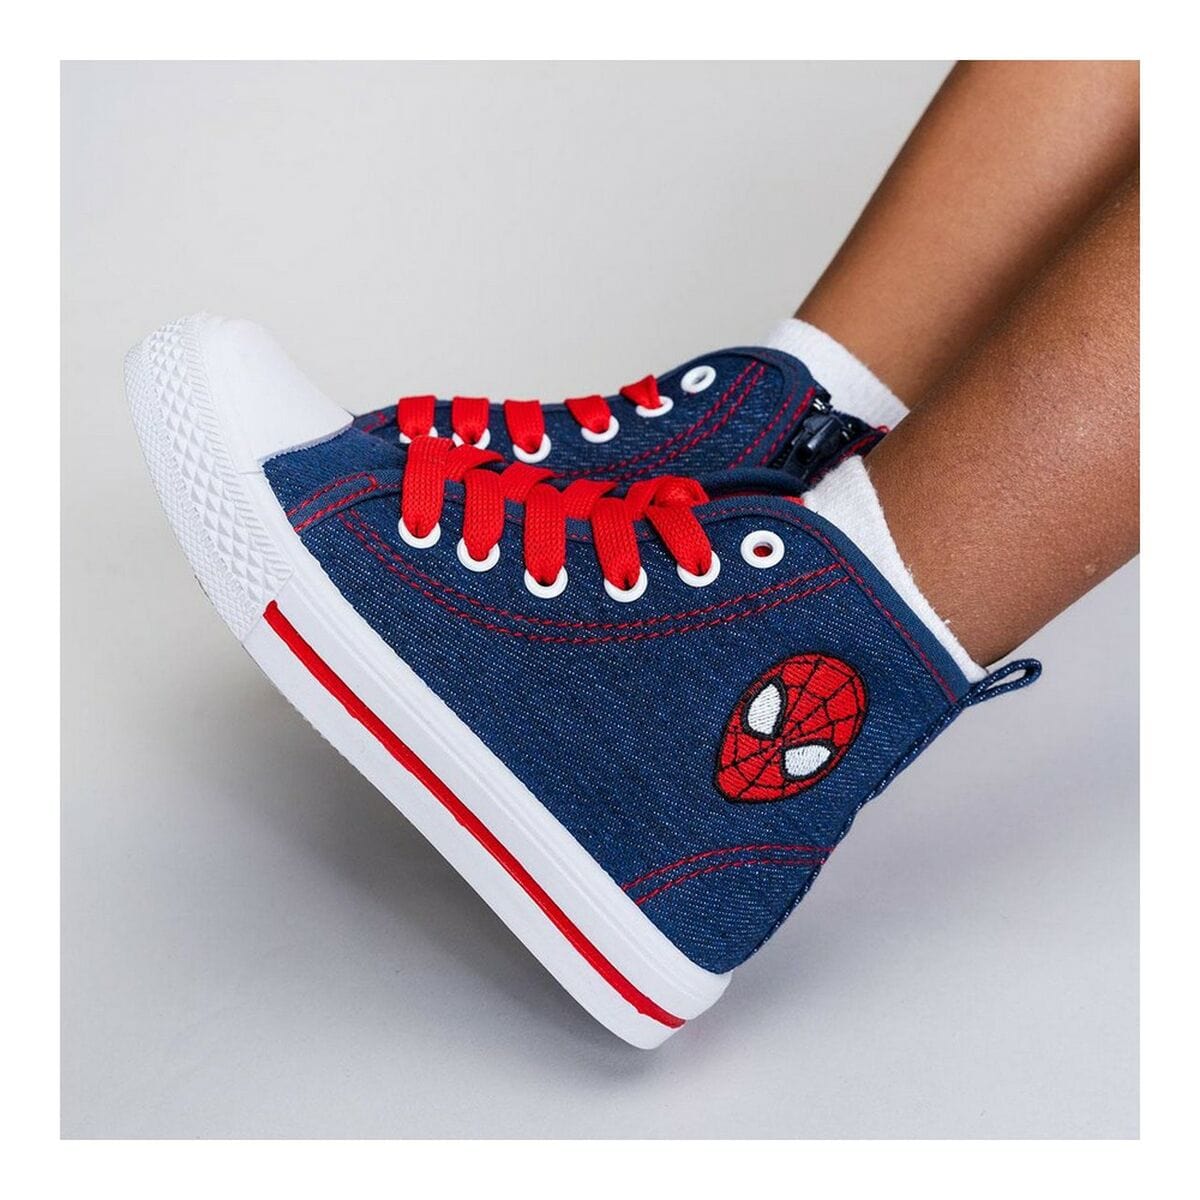 Spiderman Spielzeug | Kostüme > Babys und Kinder > Kleidung und Schuhe für Kinder 23 Freizeitstiefel für Kinder Spiderman Blau